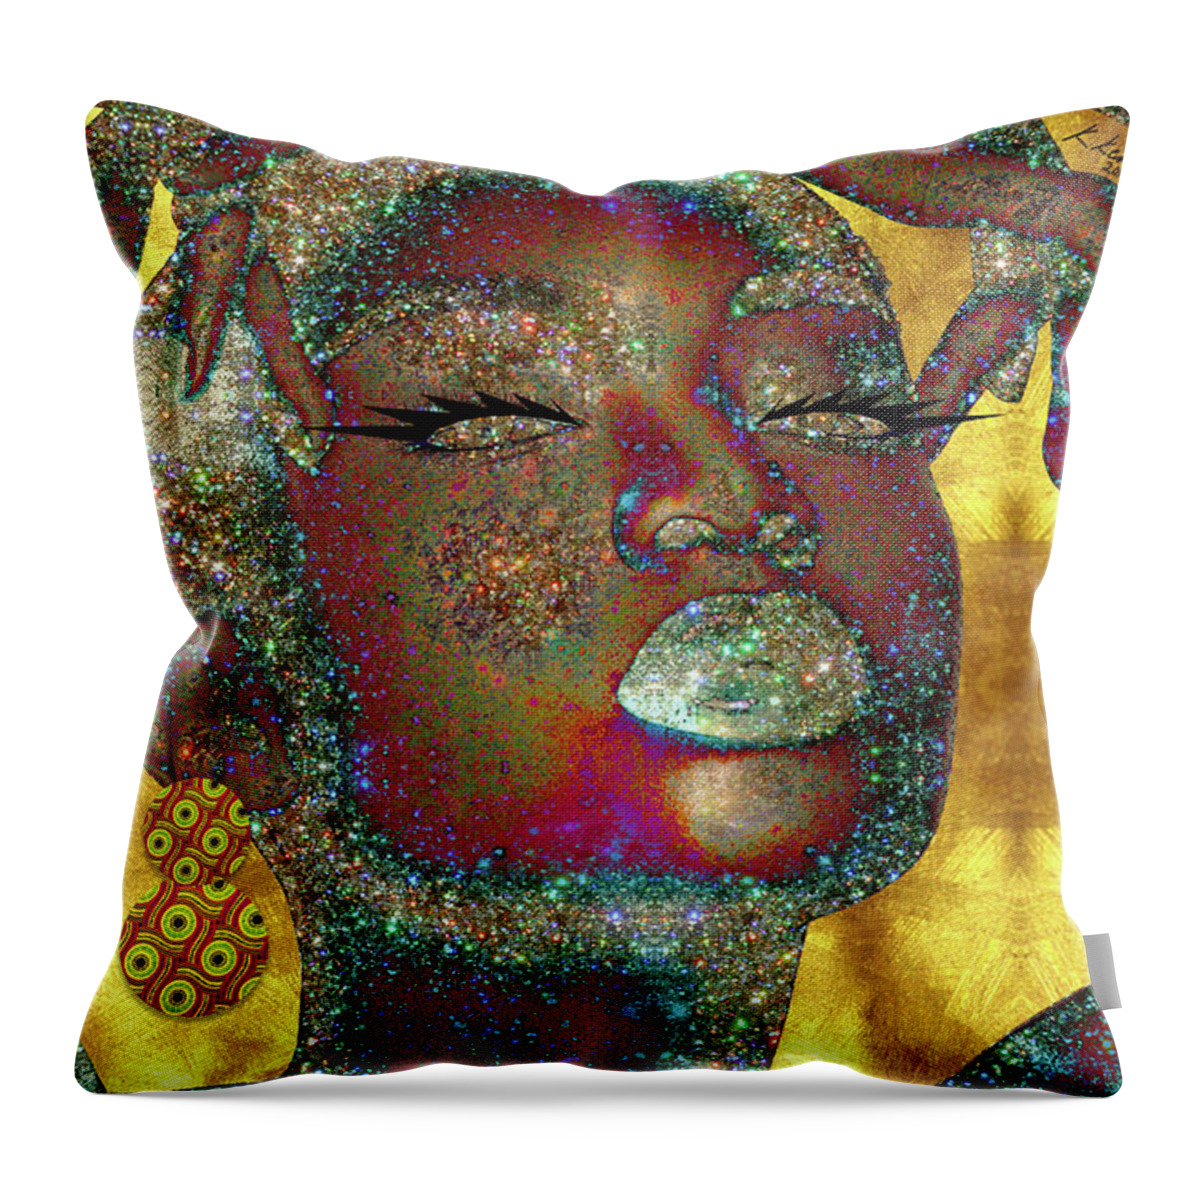 Black Girl Magic Throw Pillow for Sale by Kia Kelliebrew